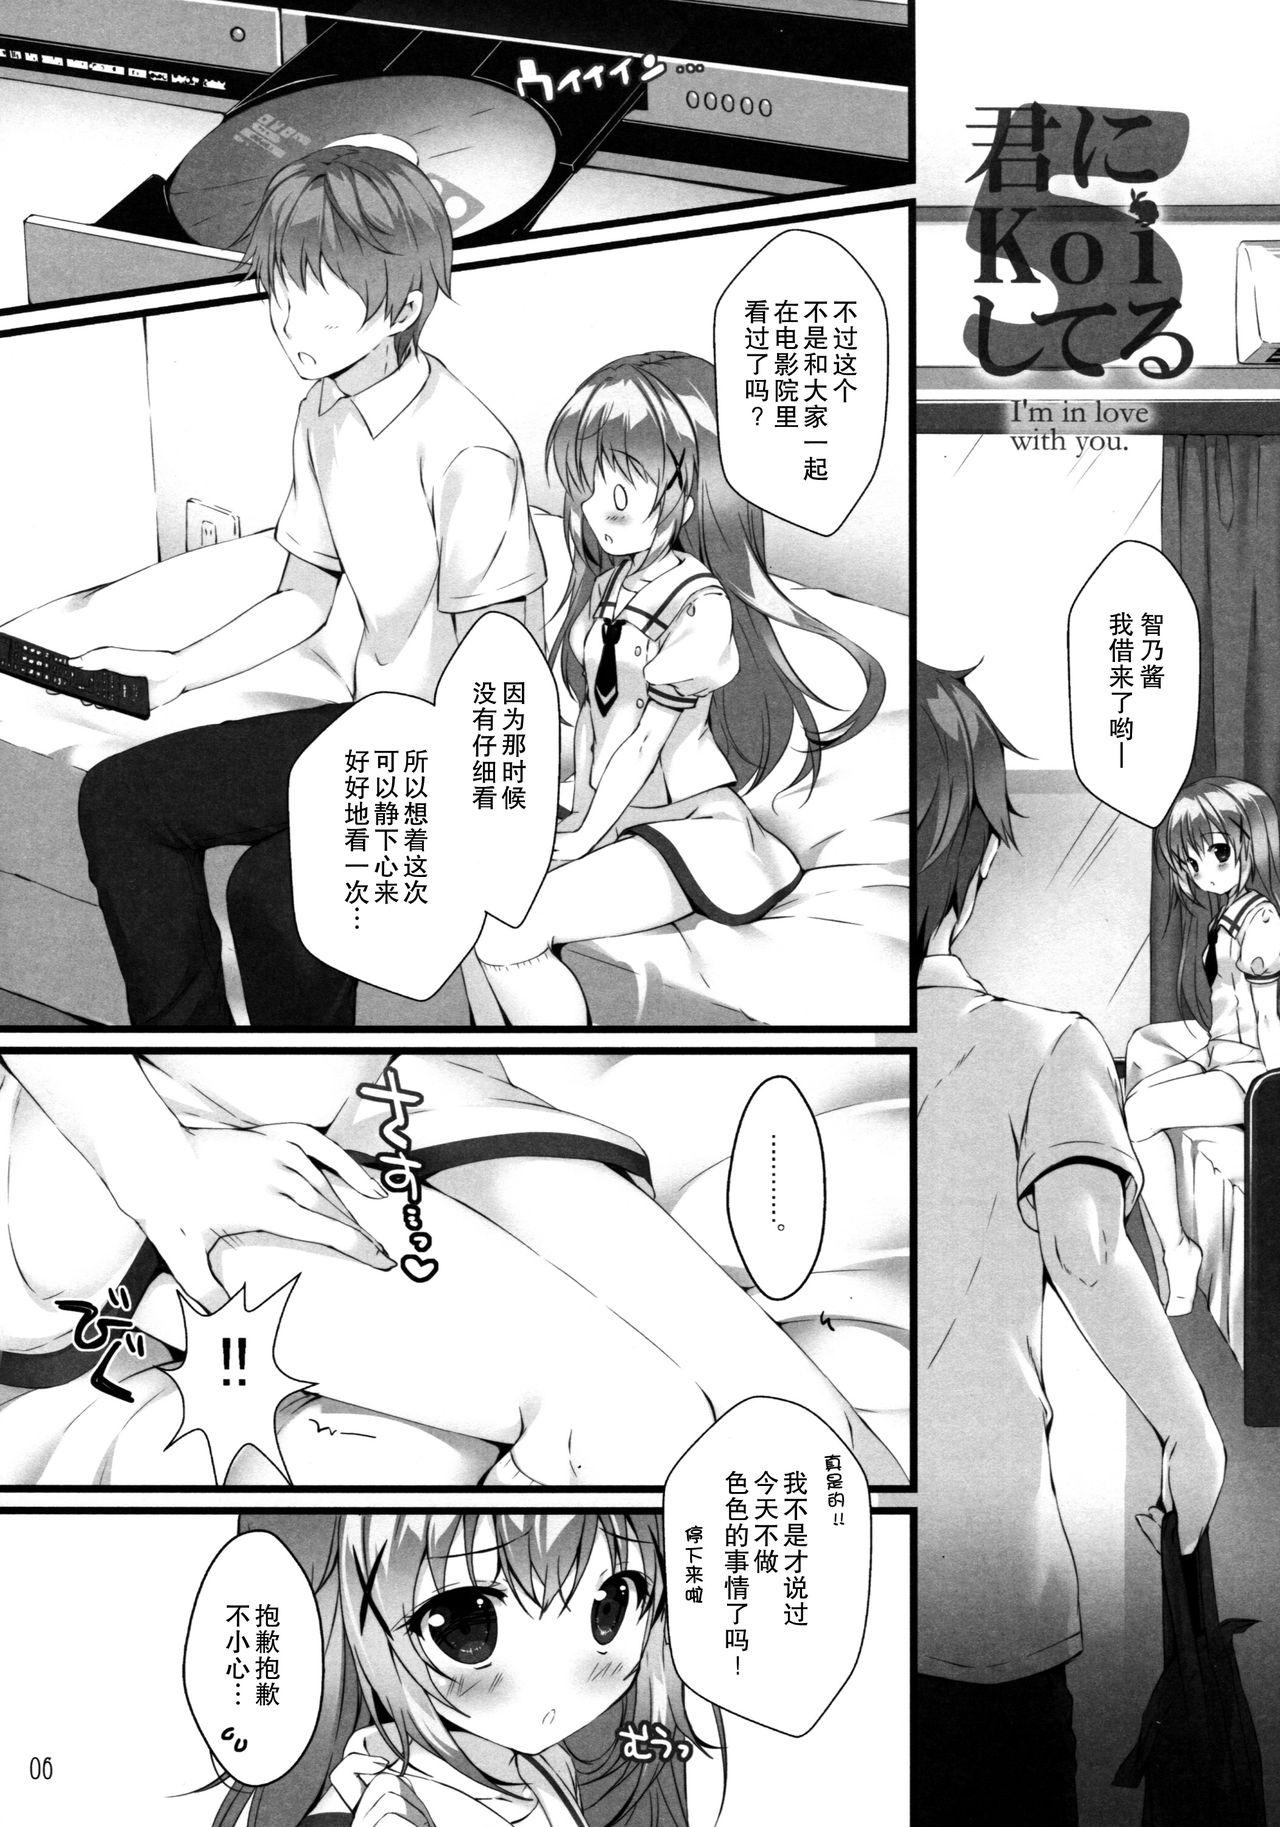 Gemidos Kimi ni koi Shiteru 5 - Gochuumon wa usagi desu ka Sextoy - Page 6